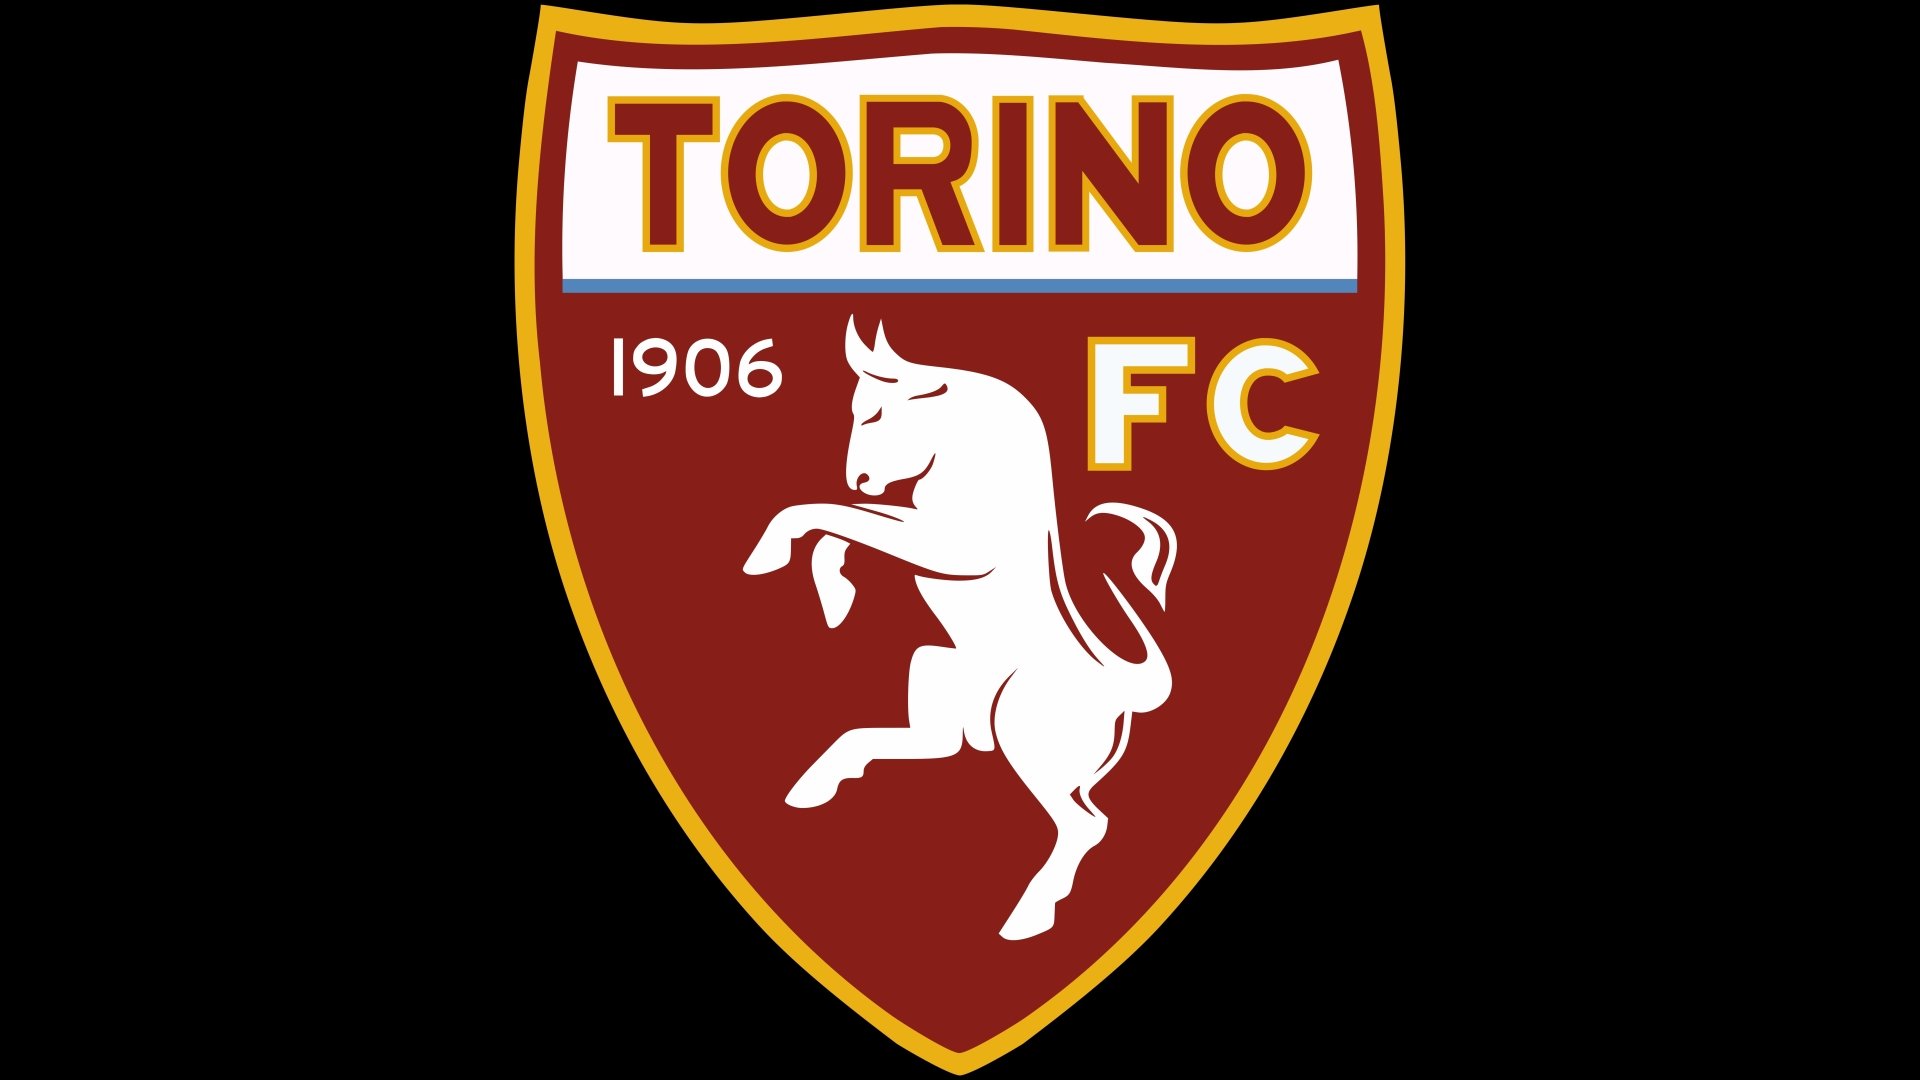 Torino F.C